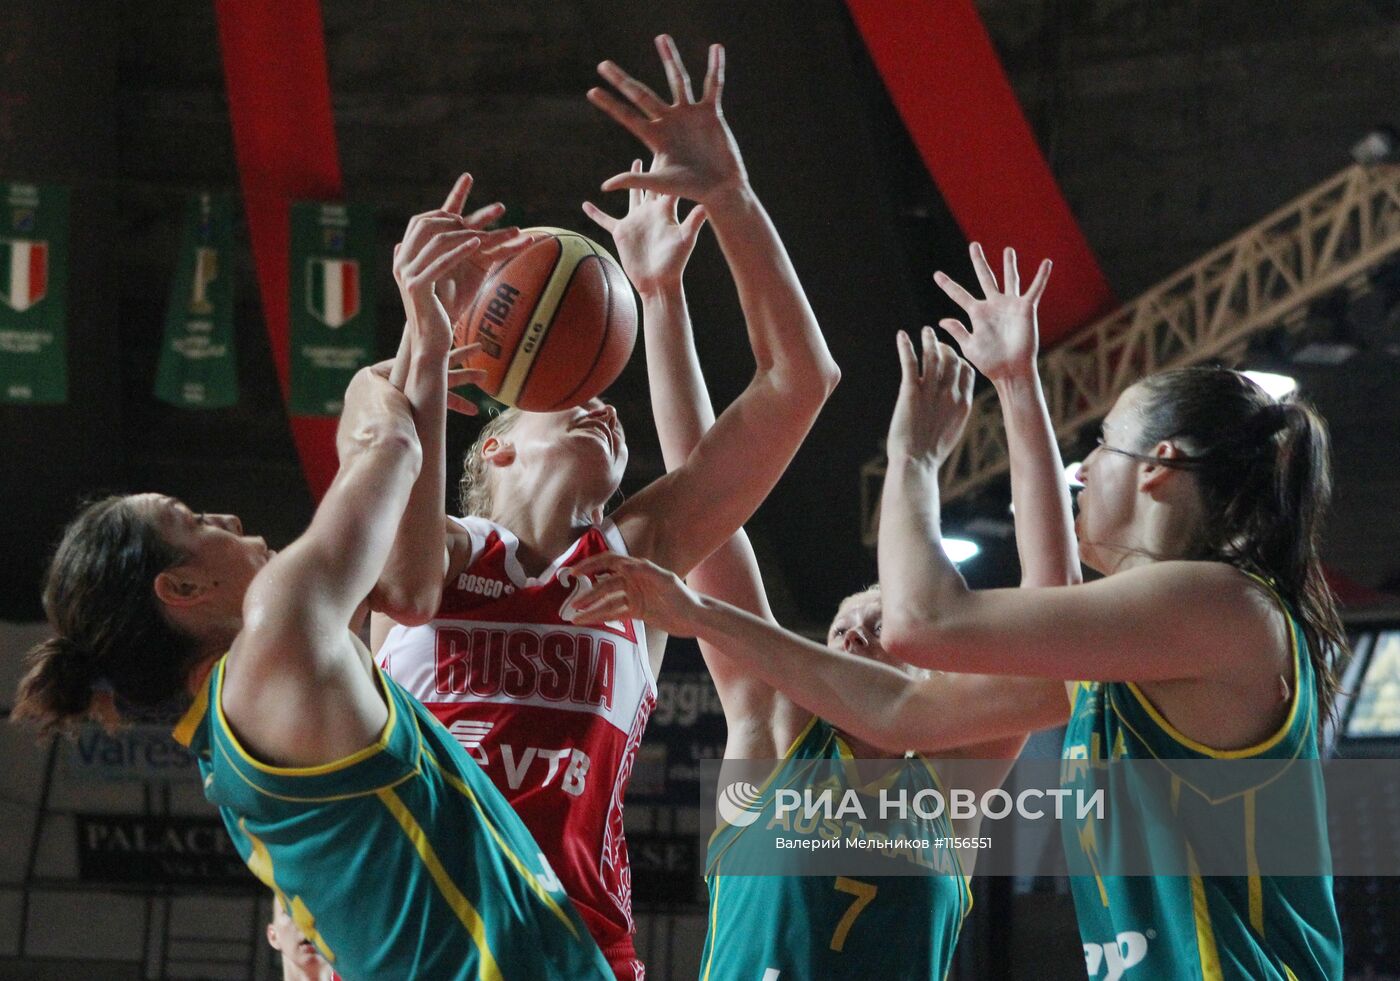 Баскетбол. Товарищеский матч сборных России и Австралии